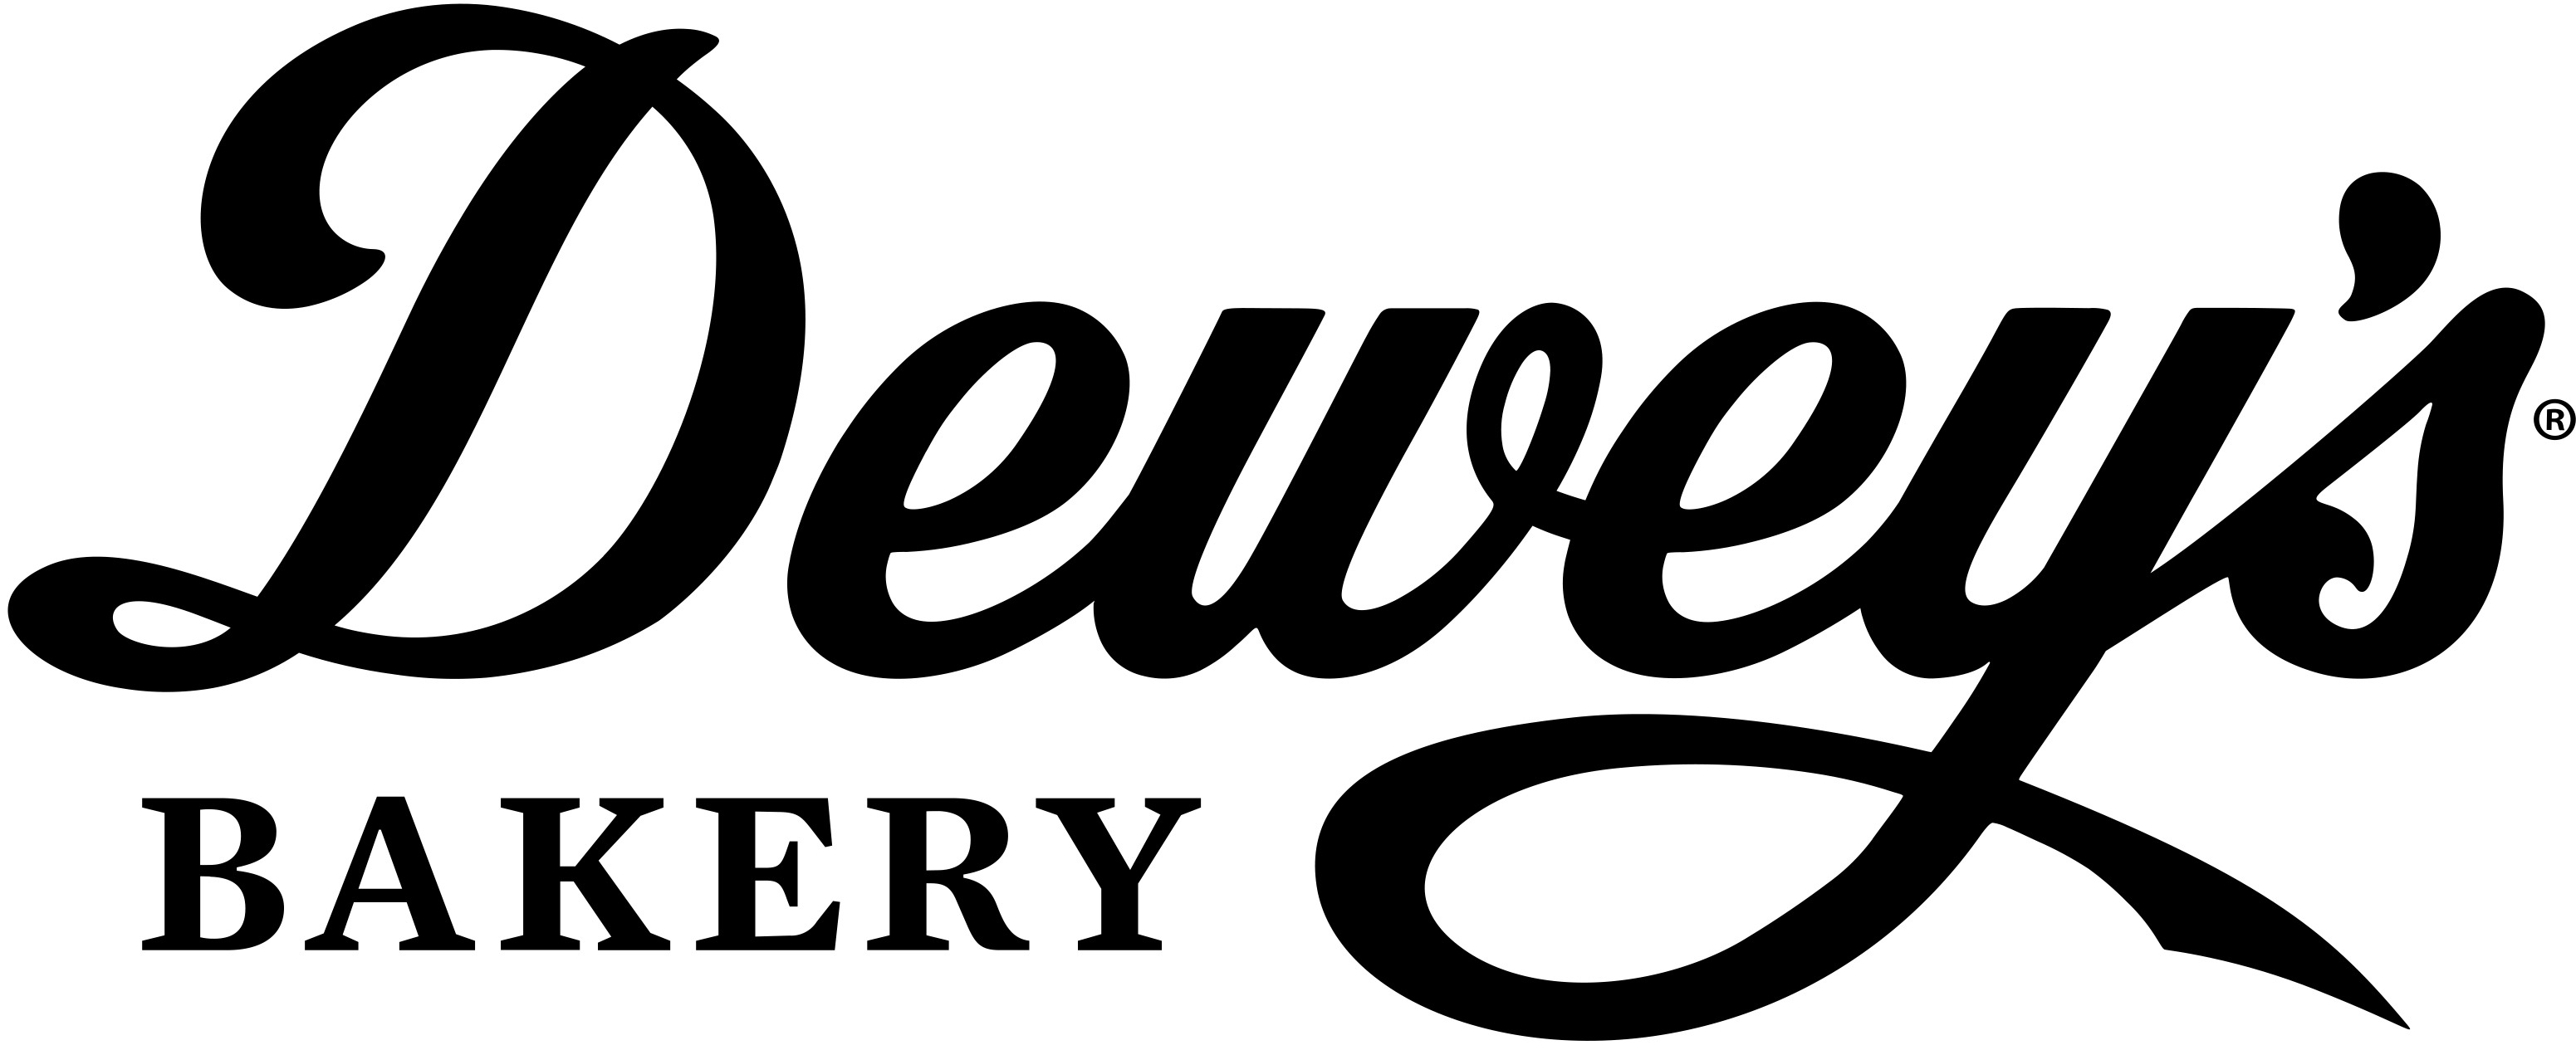 Dewey's Bakery 